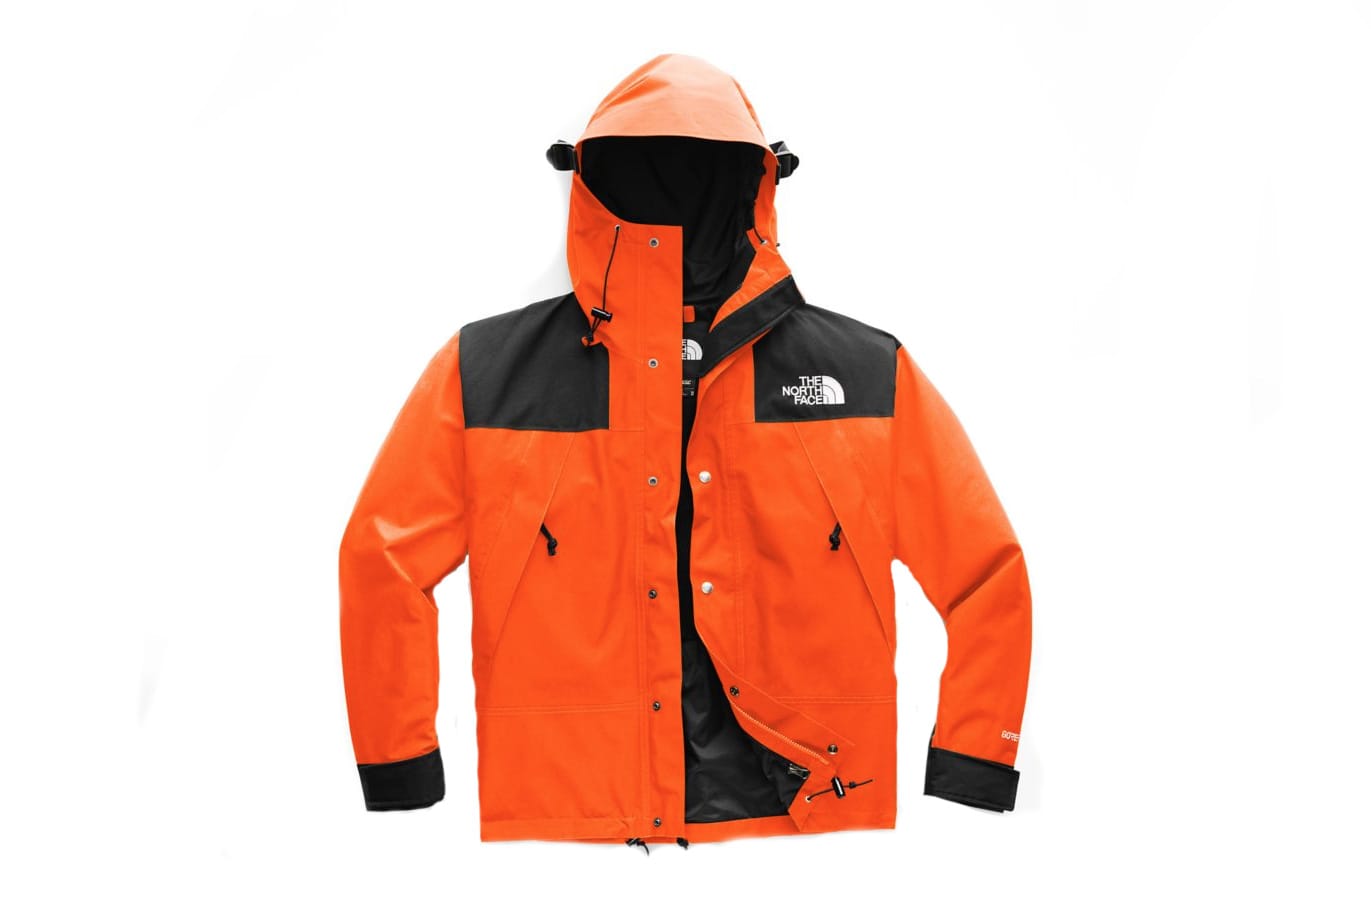 1990 mountain jacket gtx